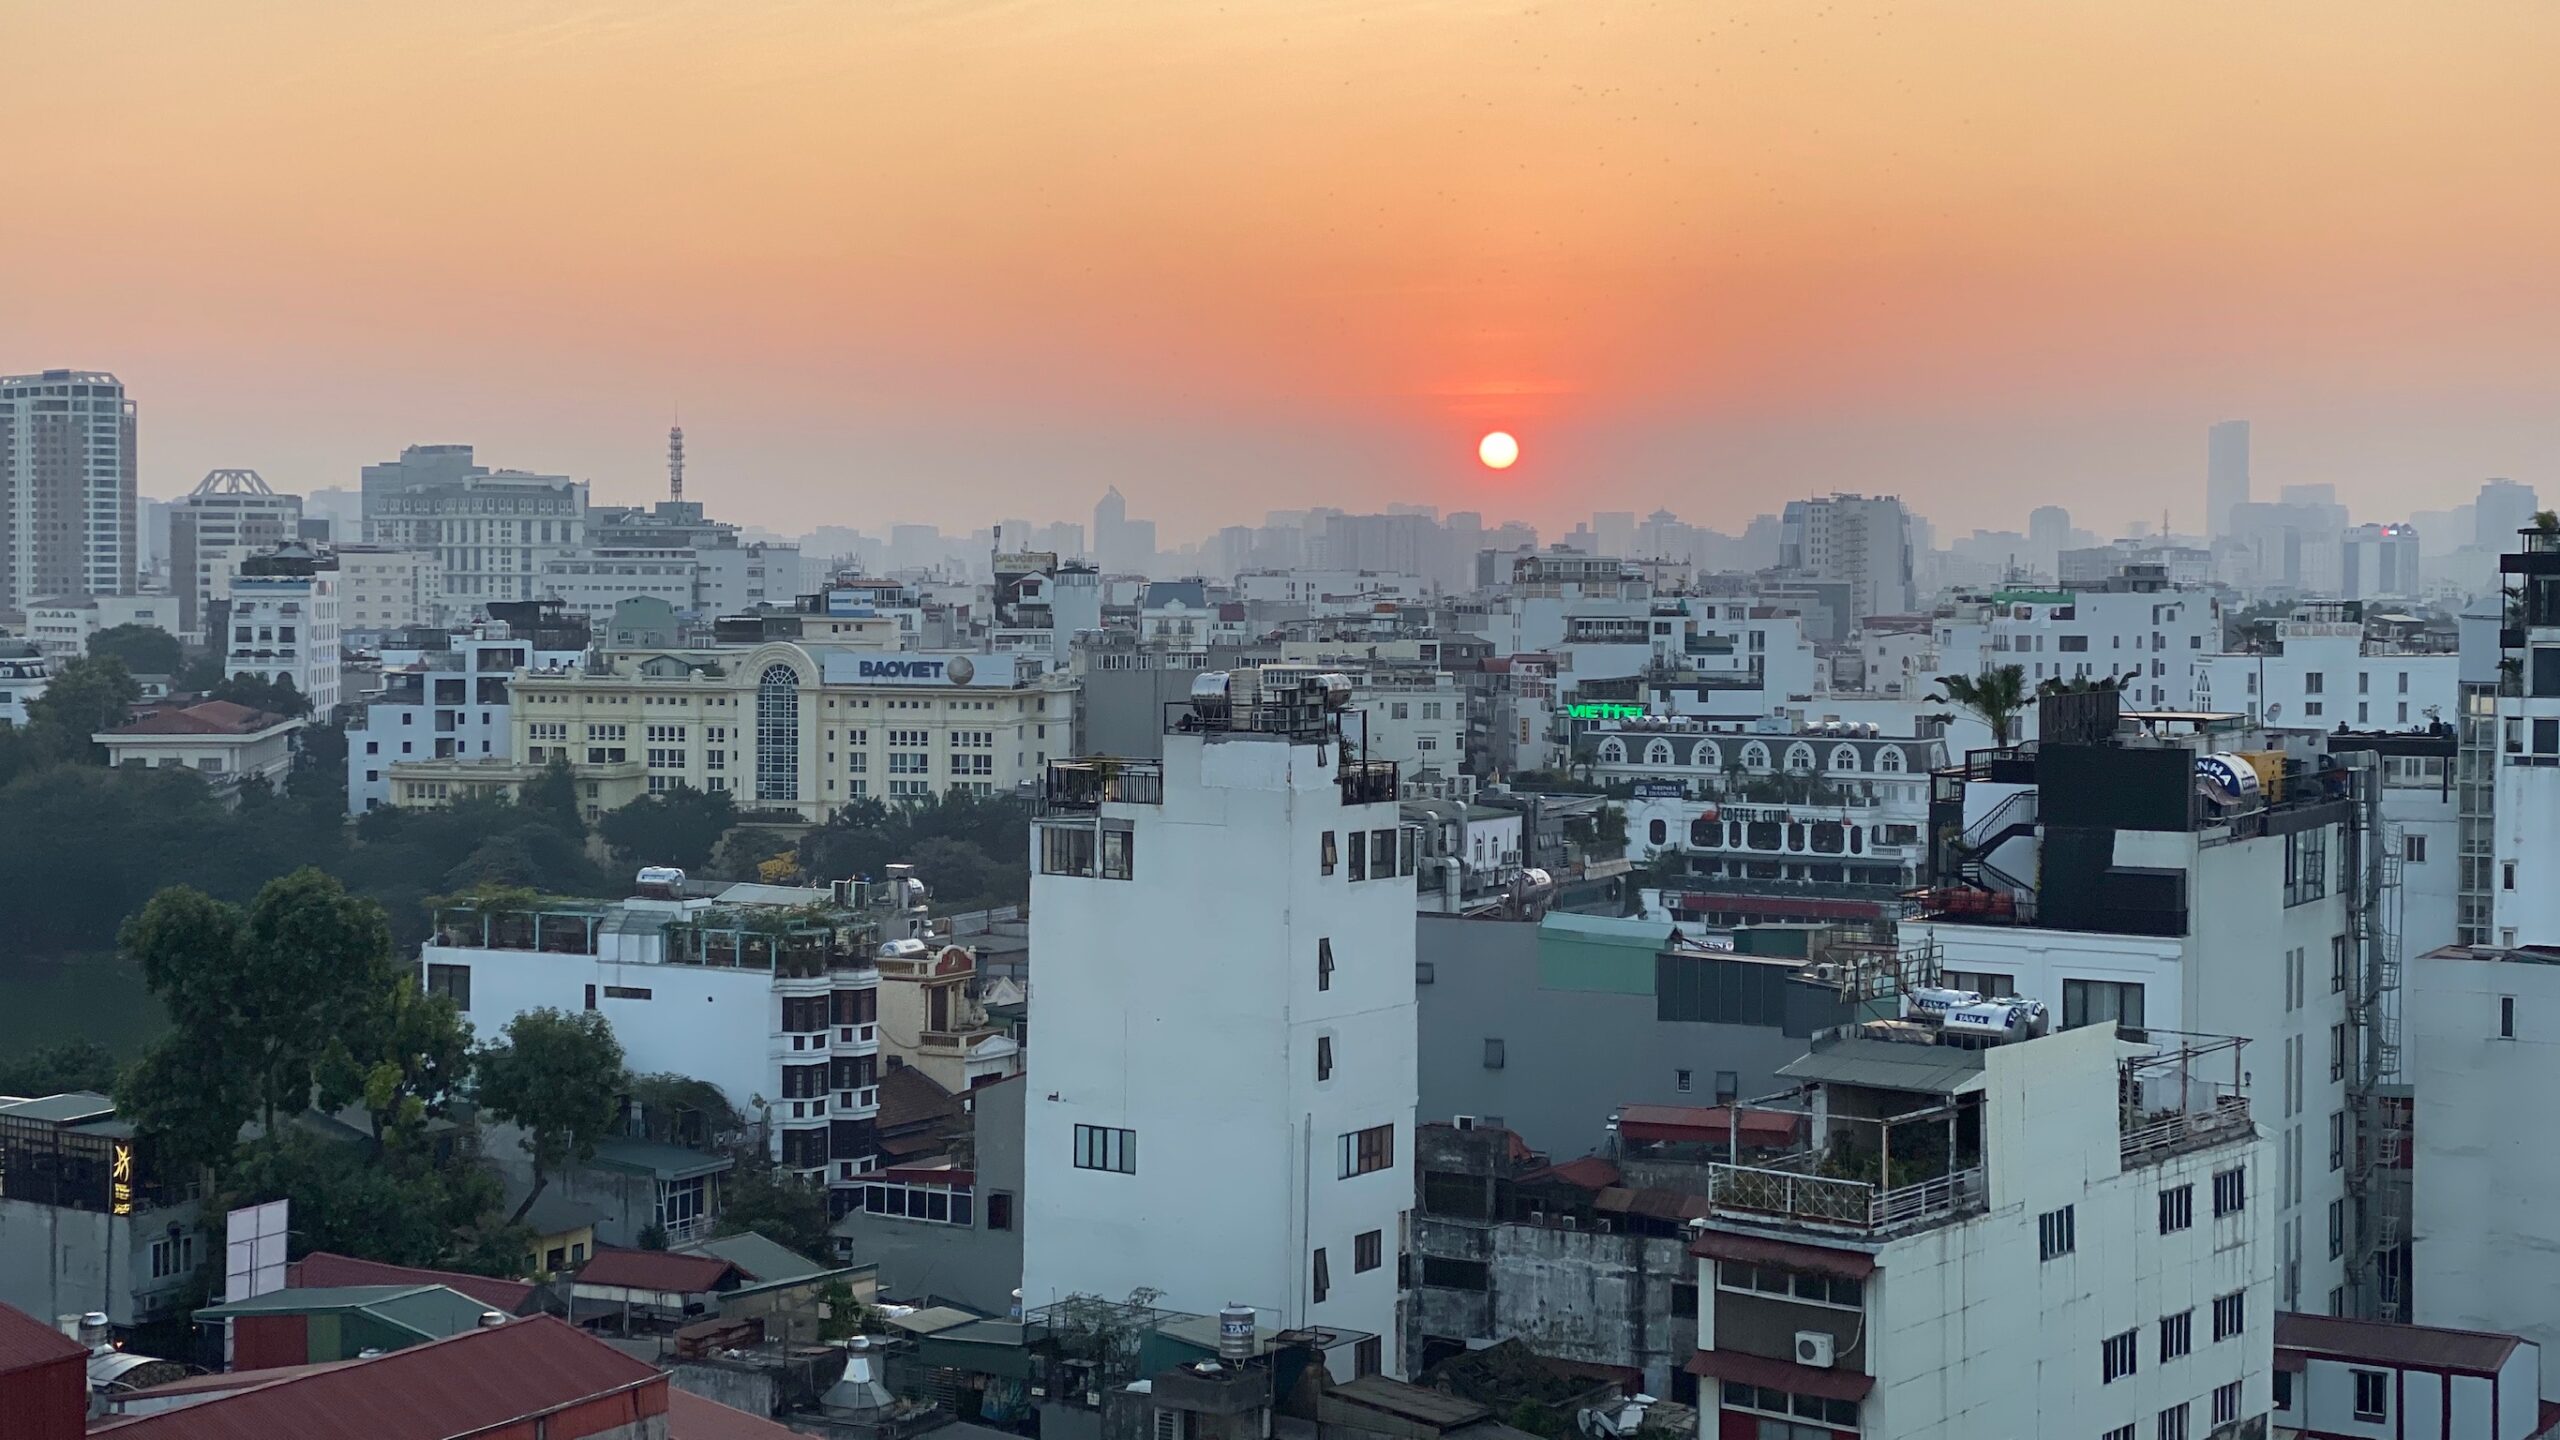 Sunset in Hanoi December 2019